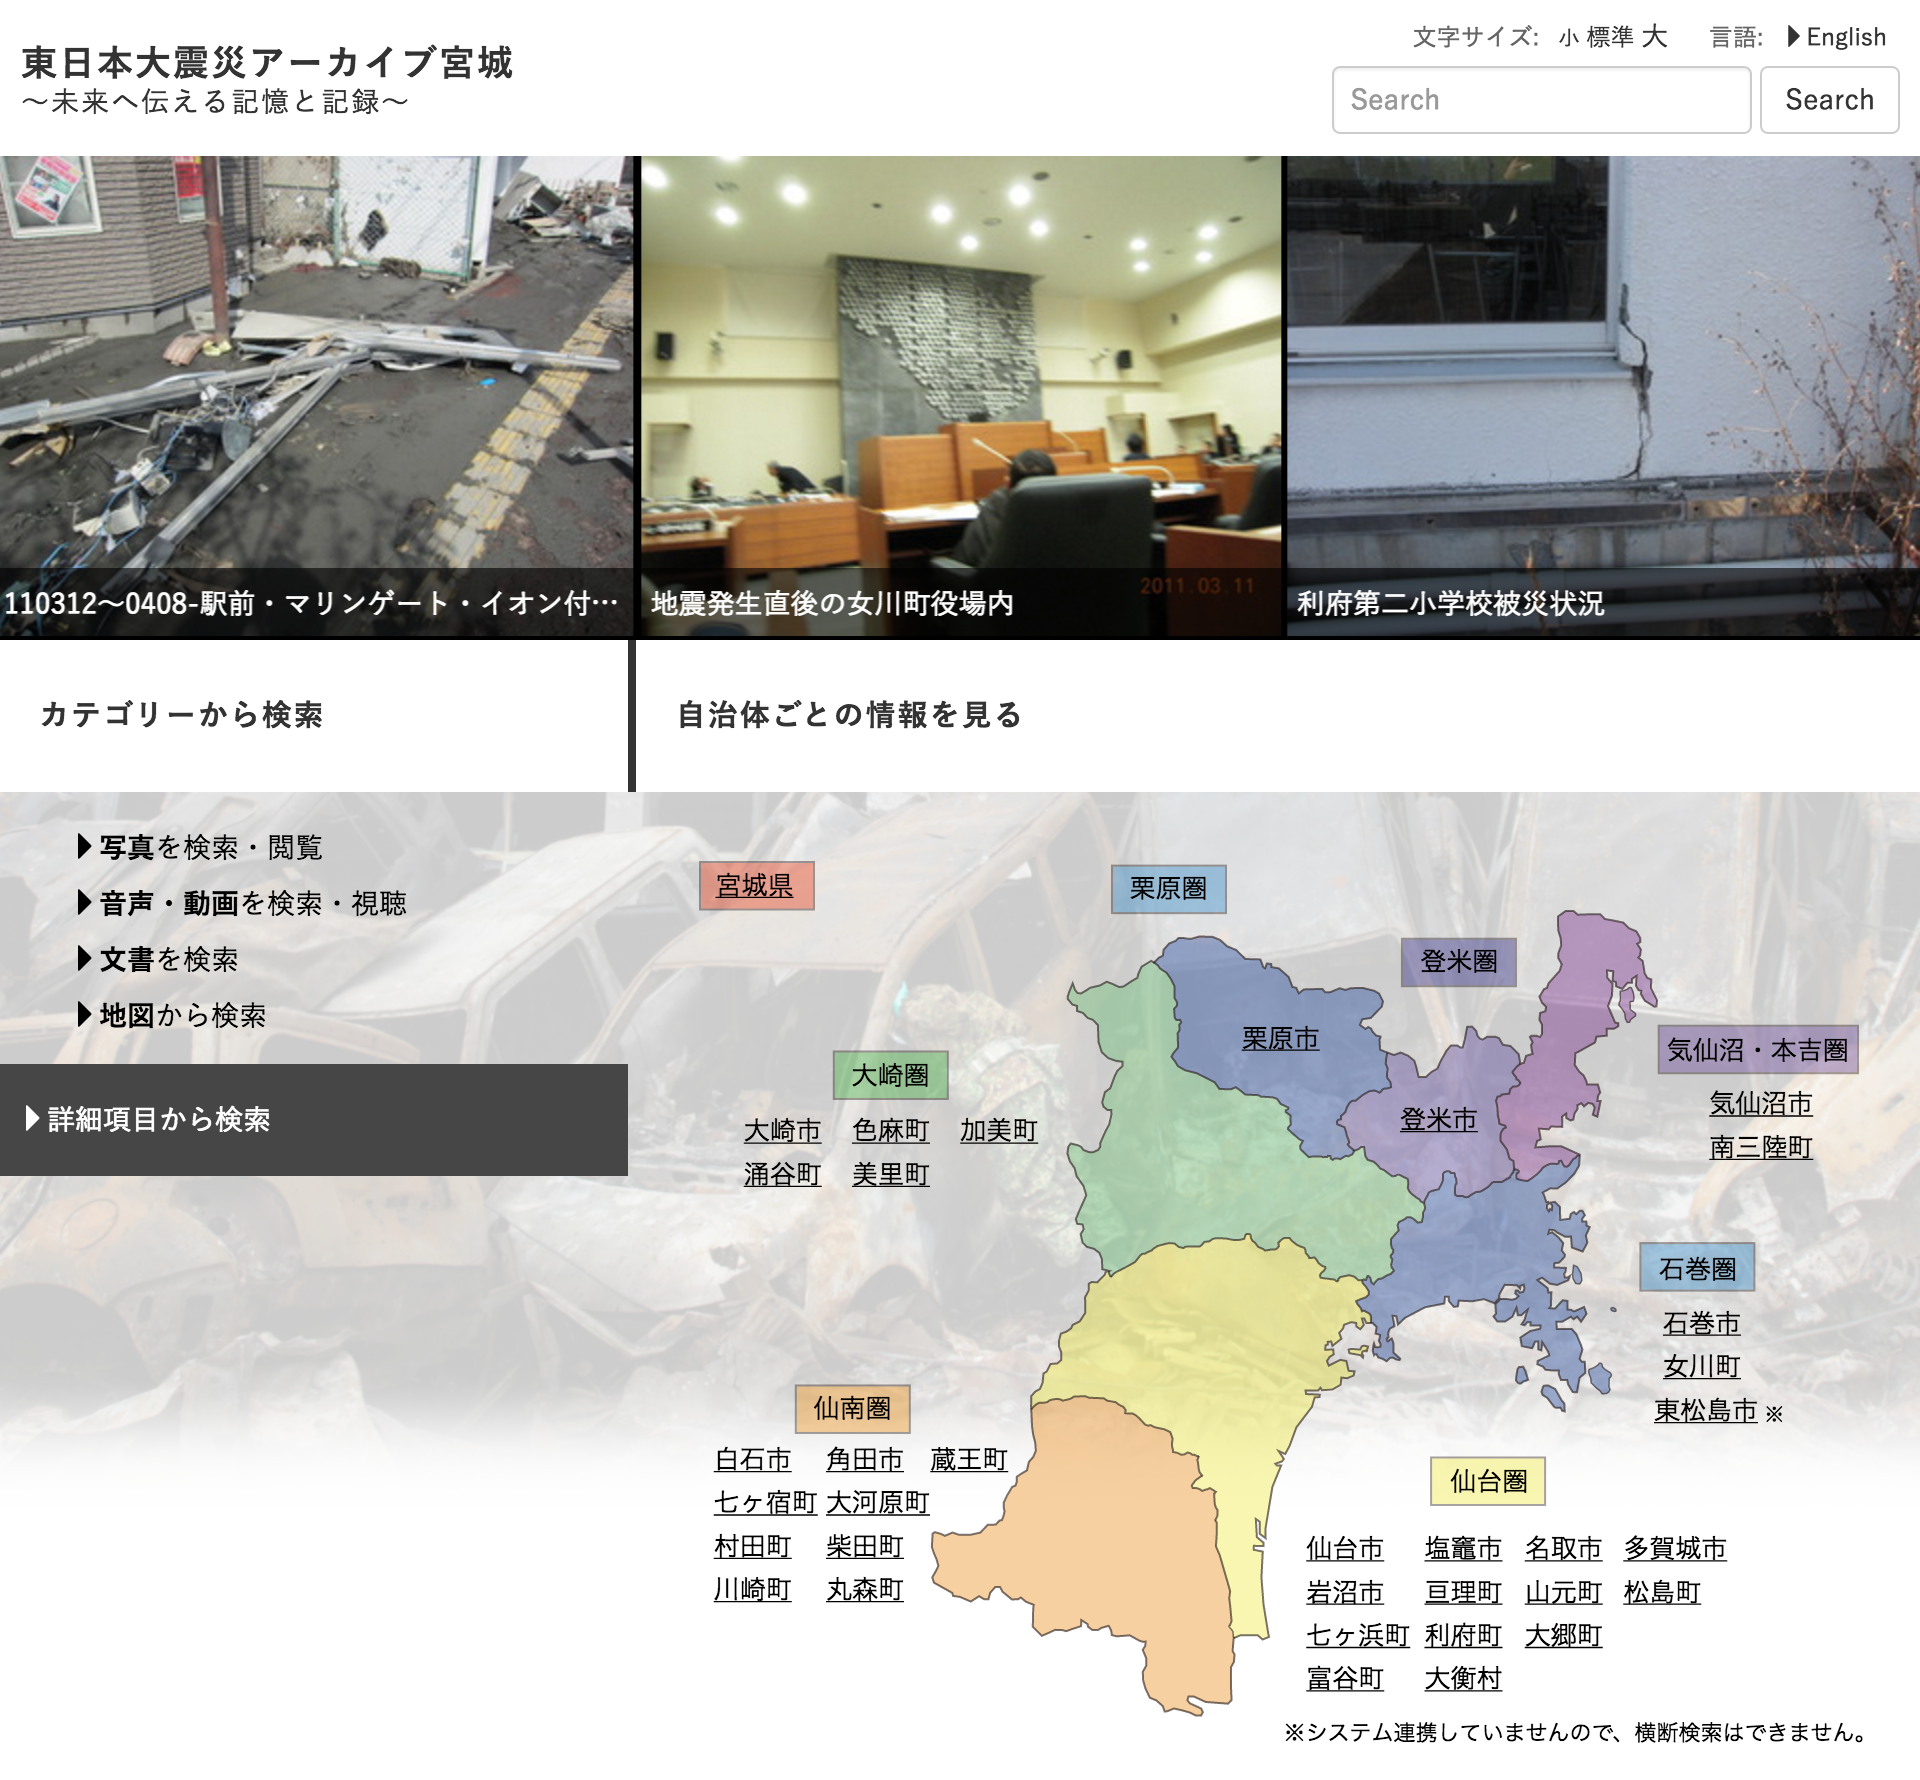 「東日本大震災アーカイブ宮城」で検索できるようになりました